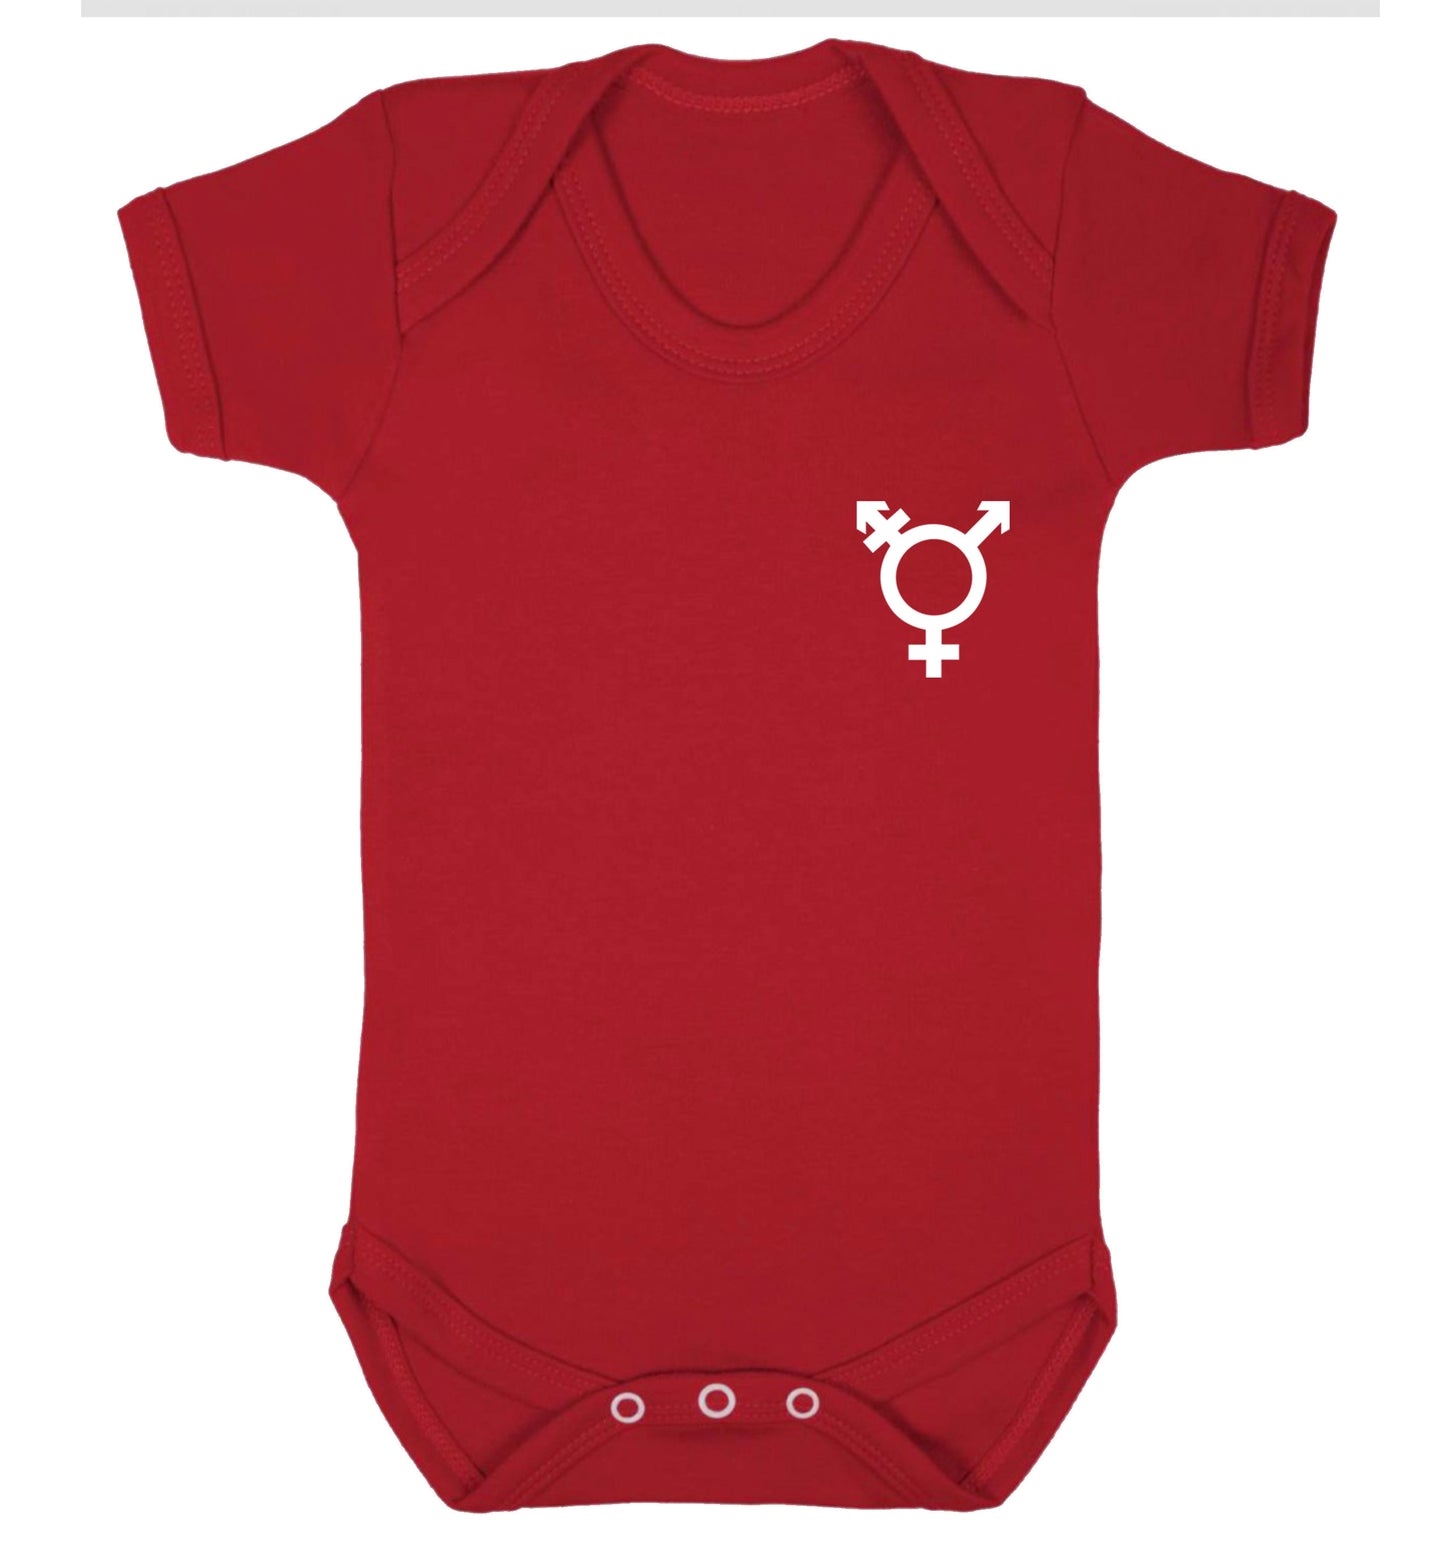 Trans gender symbol pocket Baby Vest red 18-24 months